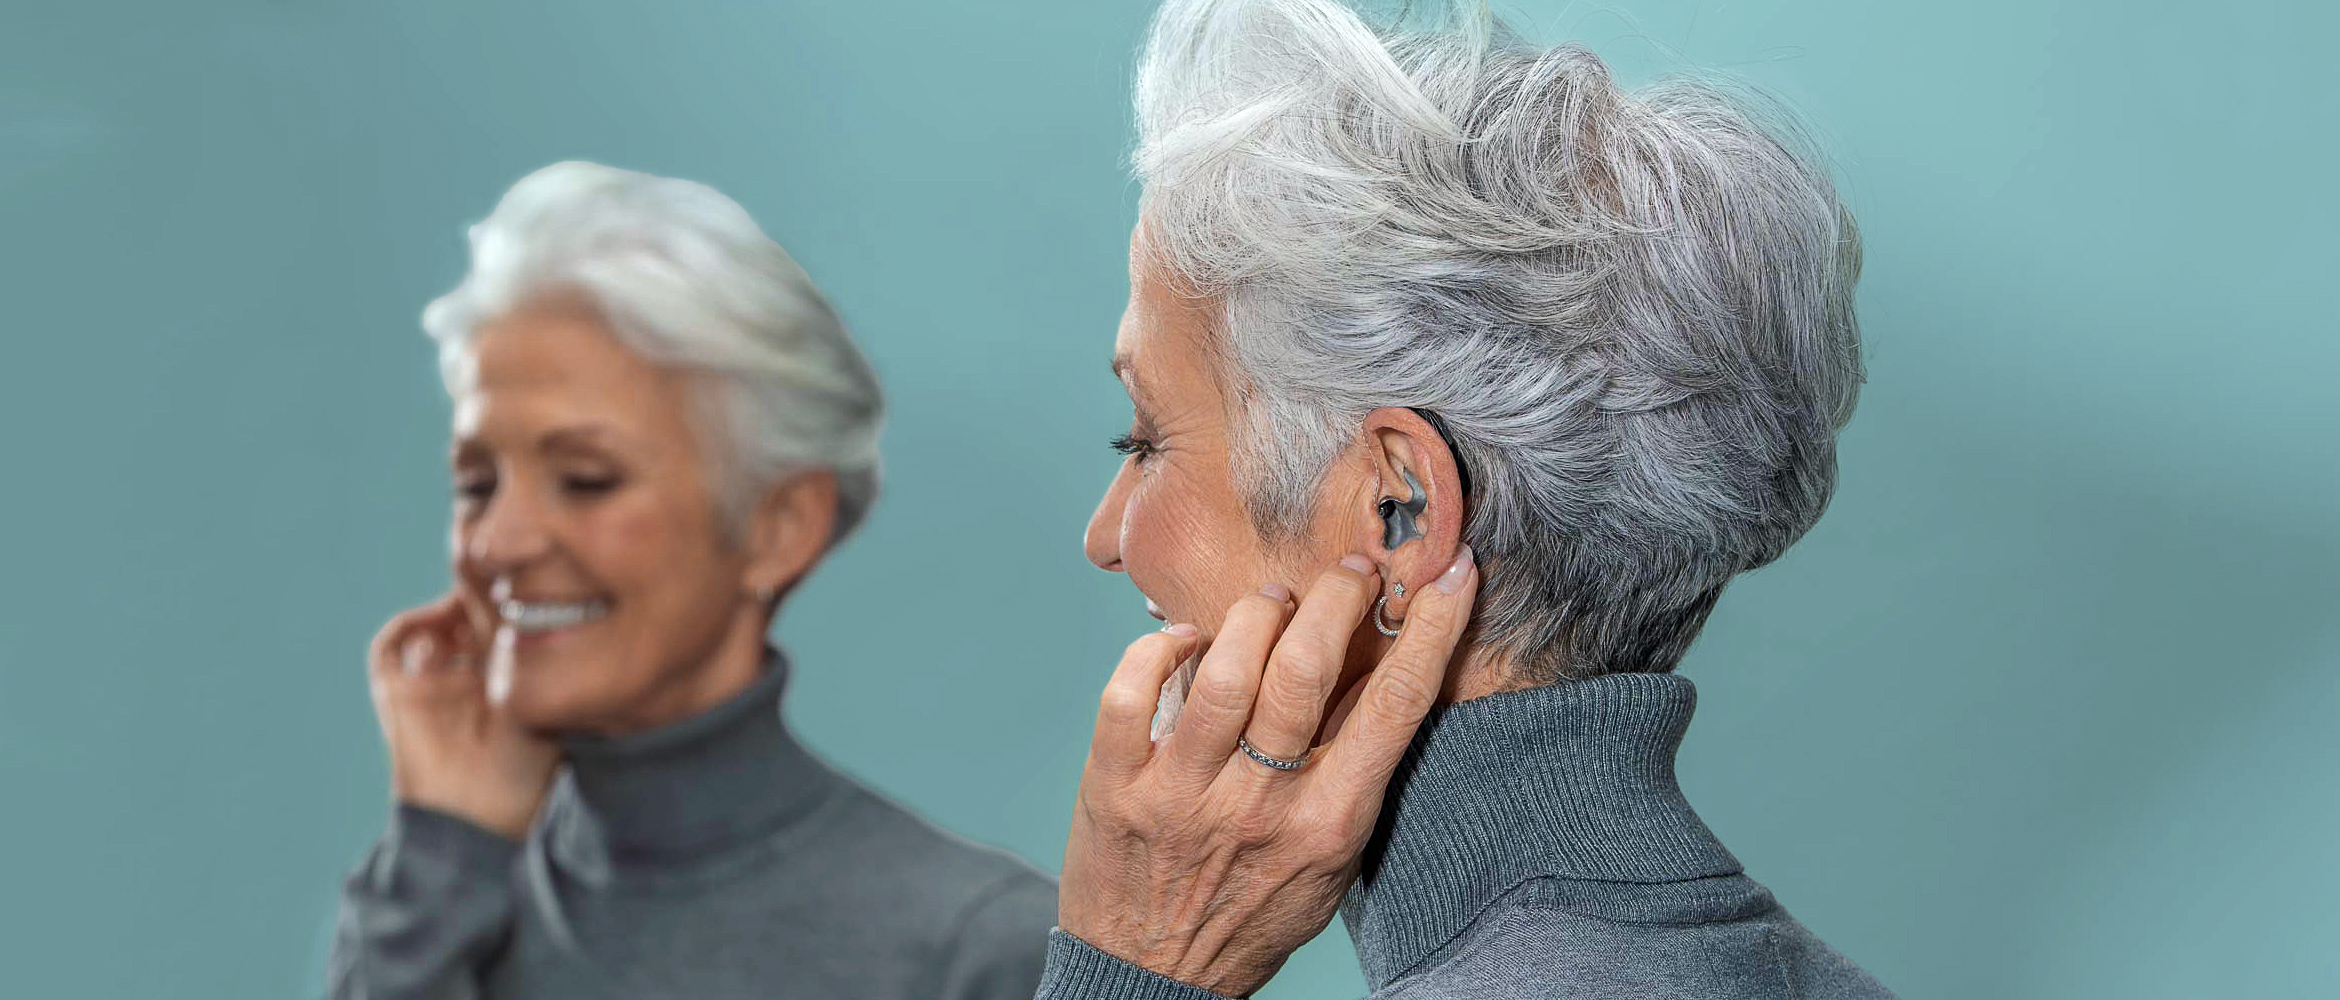 Ein lächelnde ältere Frau mit silbergrauem Haar setzt ein modernes, titanfarbenes Hörgerät ein.